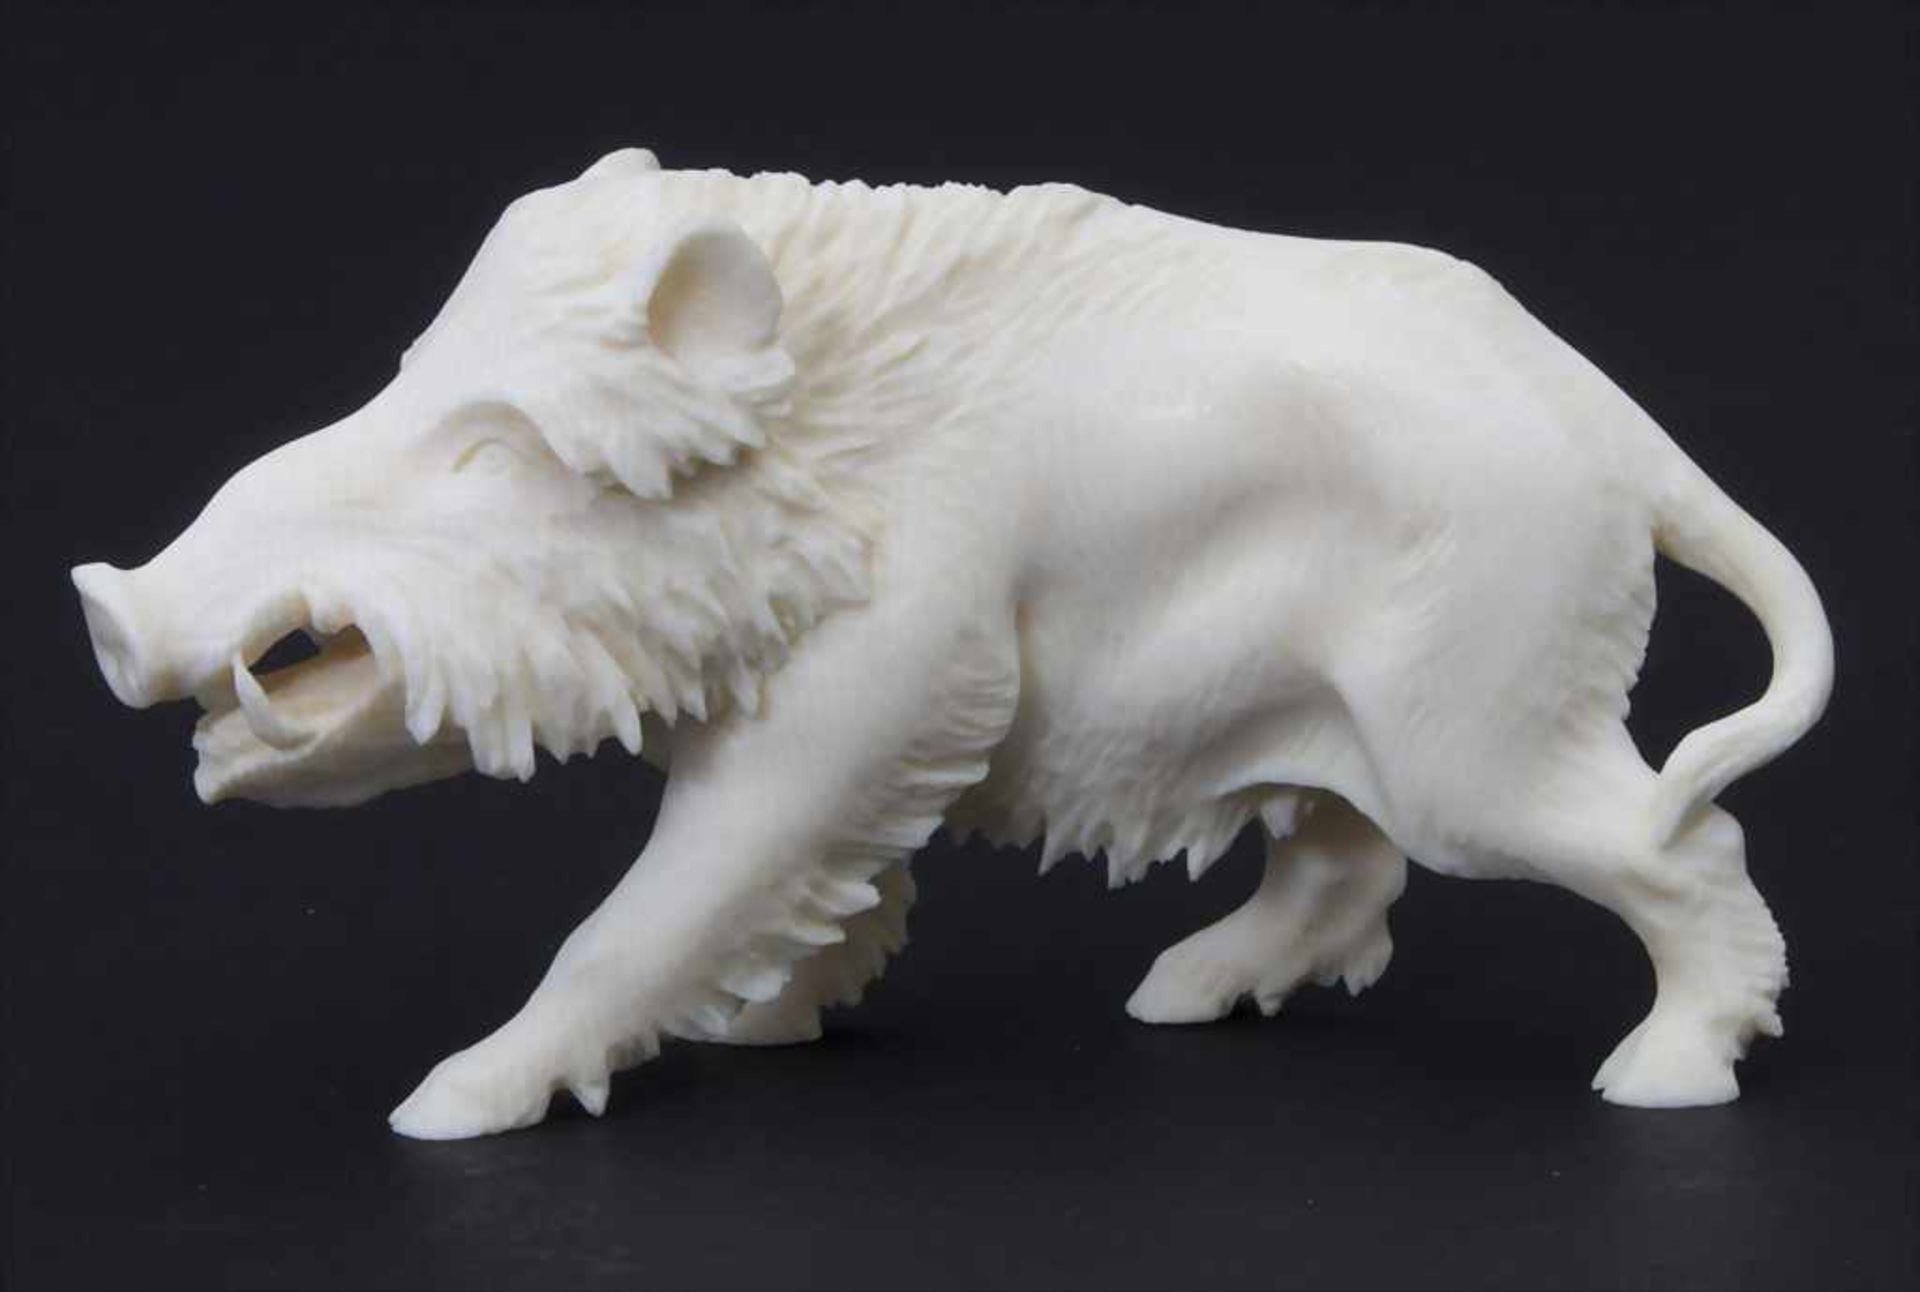 Tierfigur 'Wildschwein' / An animal figure 'wild boar', 1930er JahreMaterial: Elfenbein,